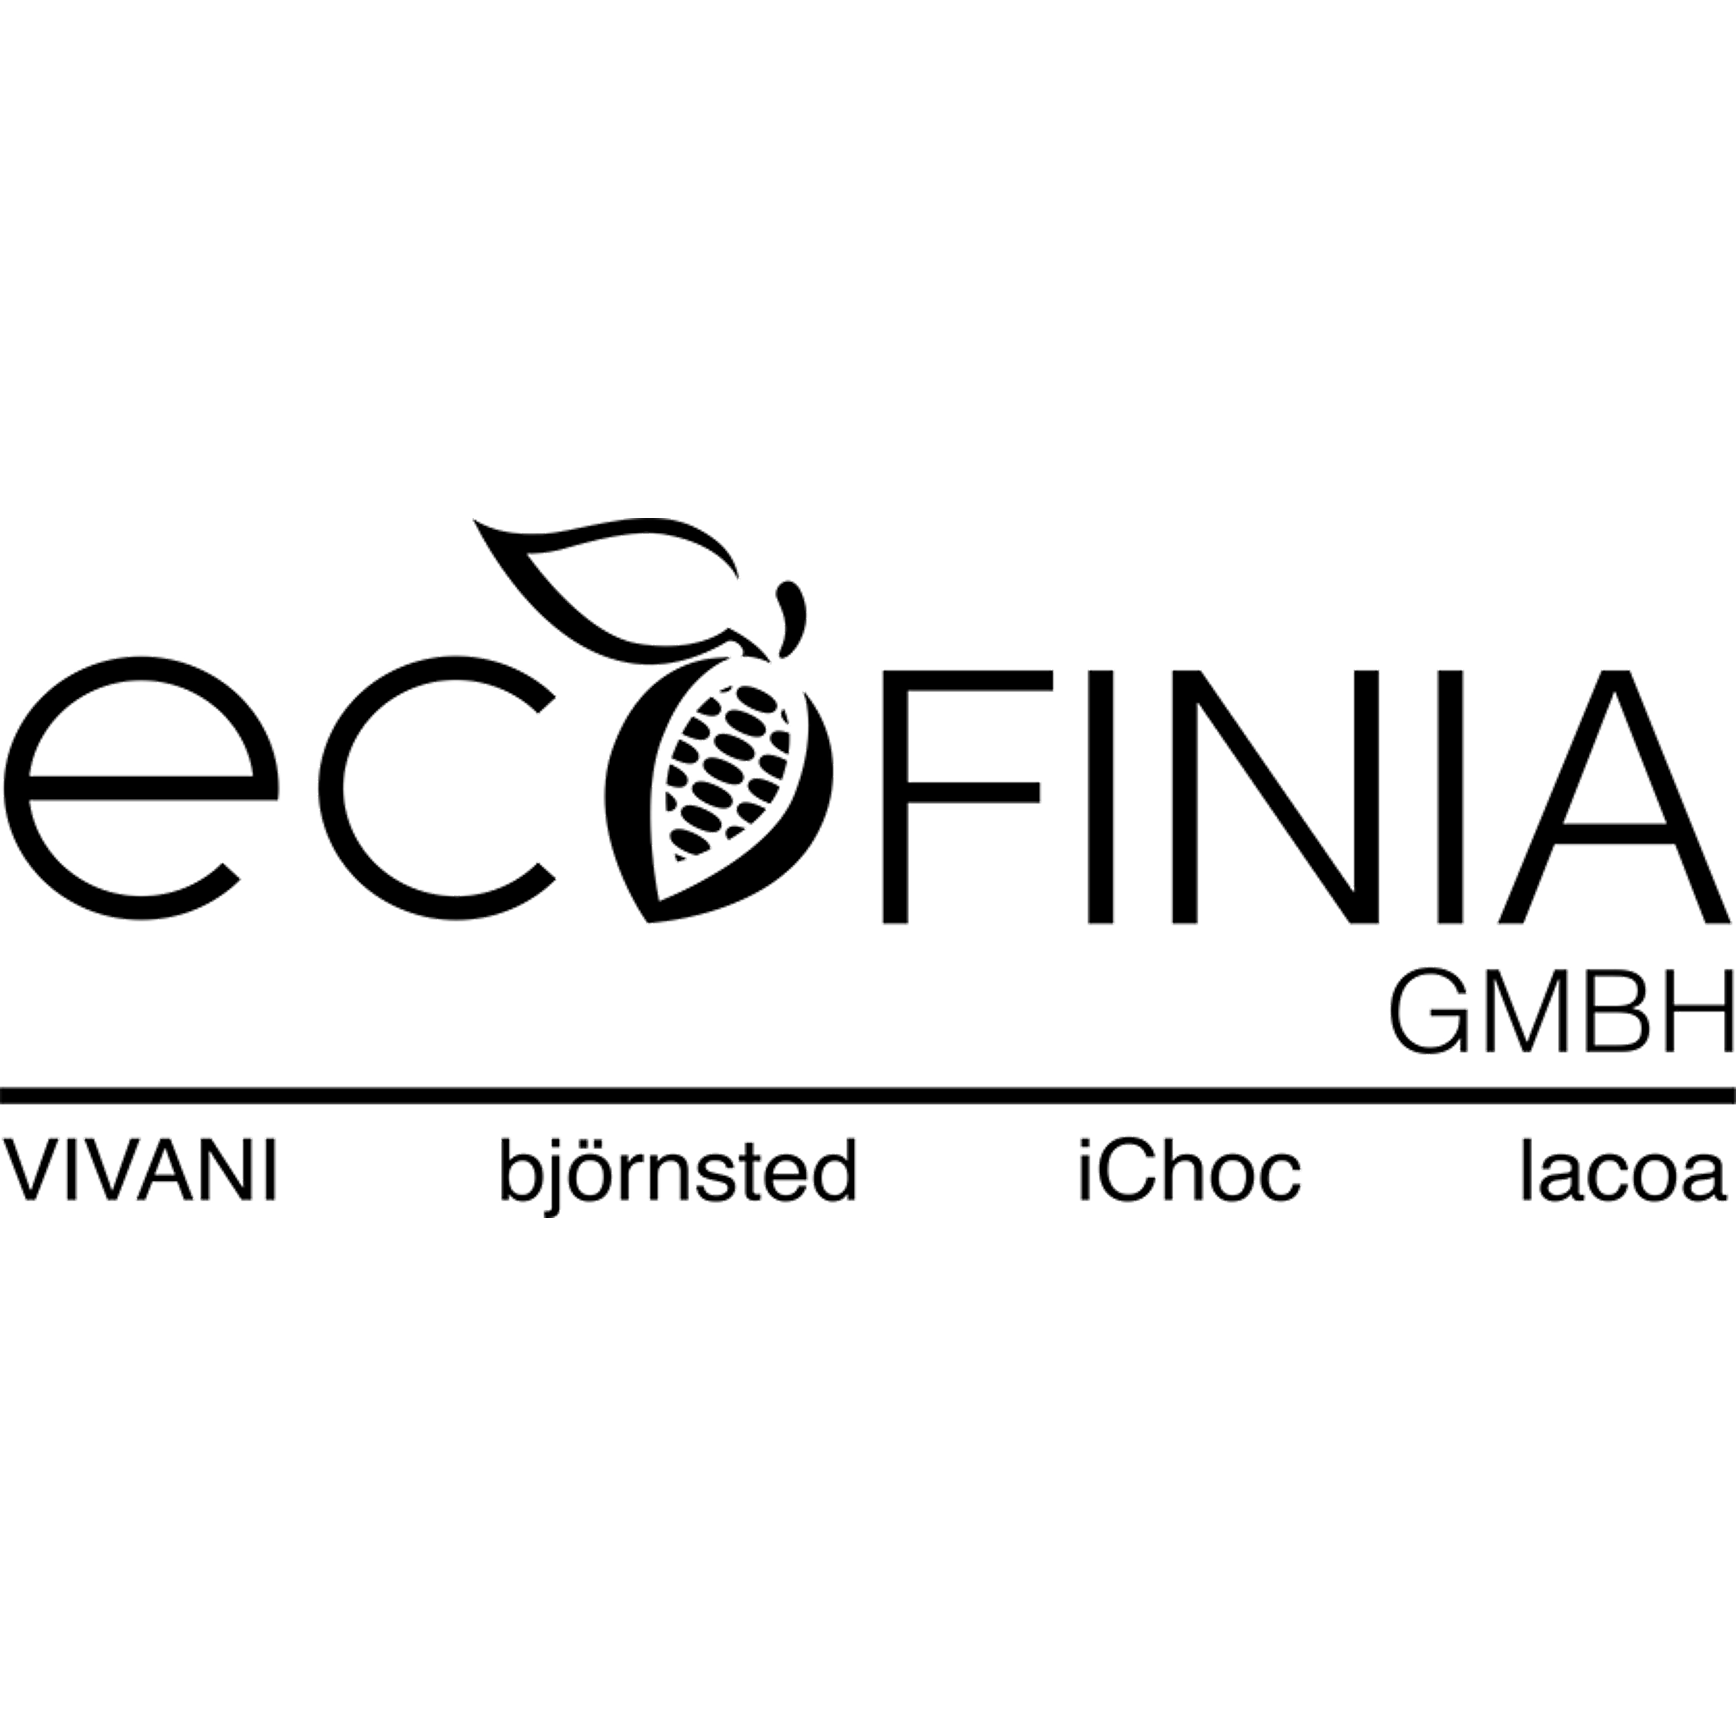 Logo EcoFinia GmbH